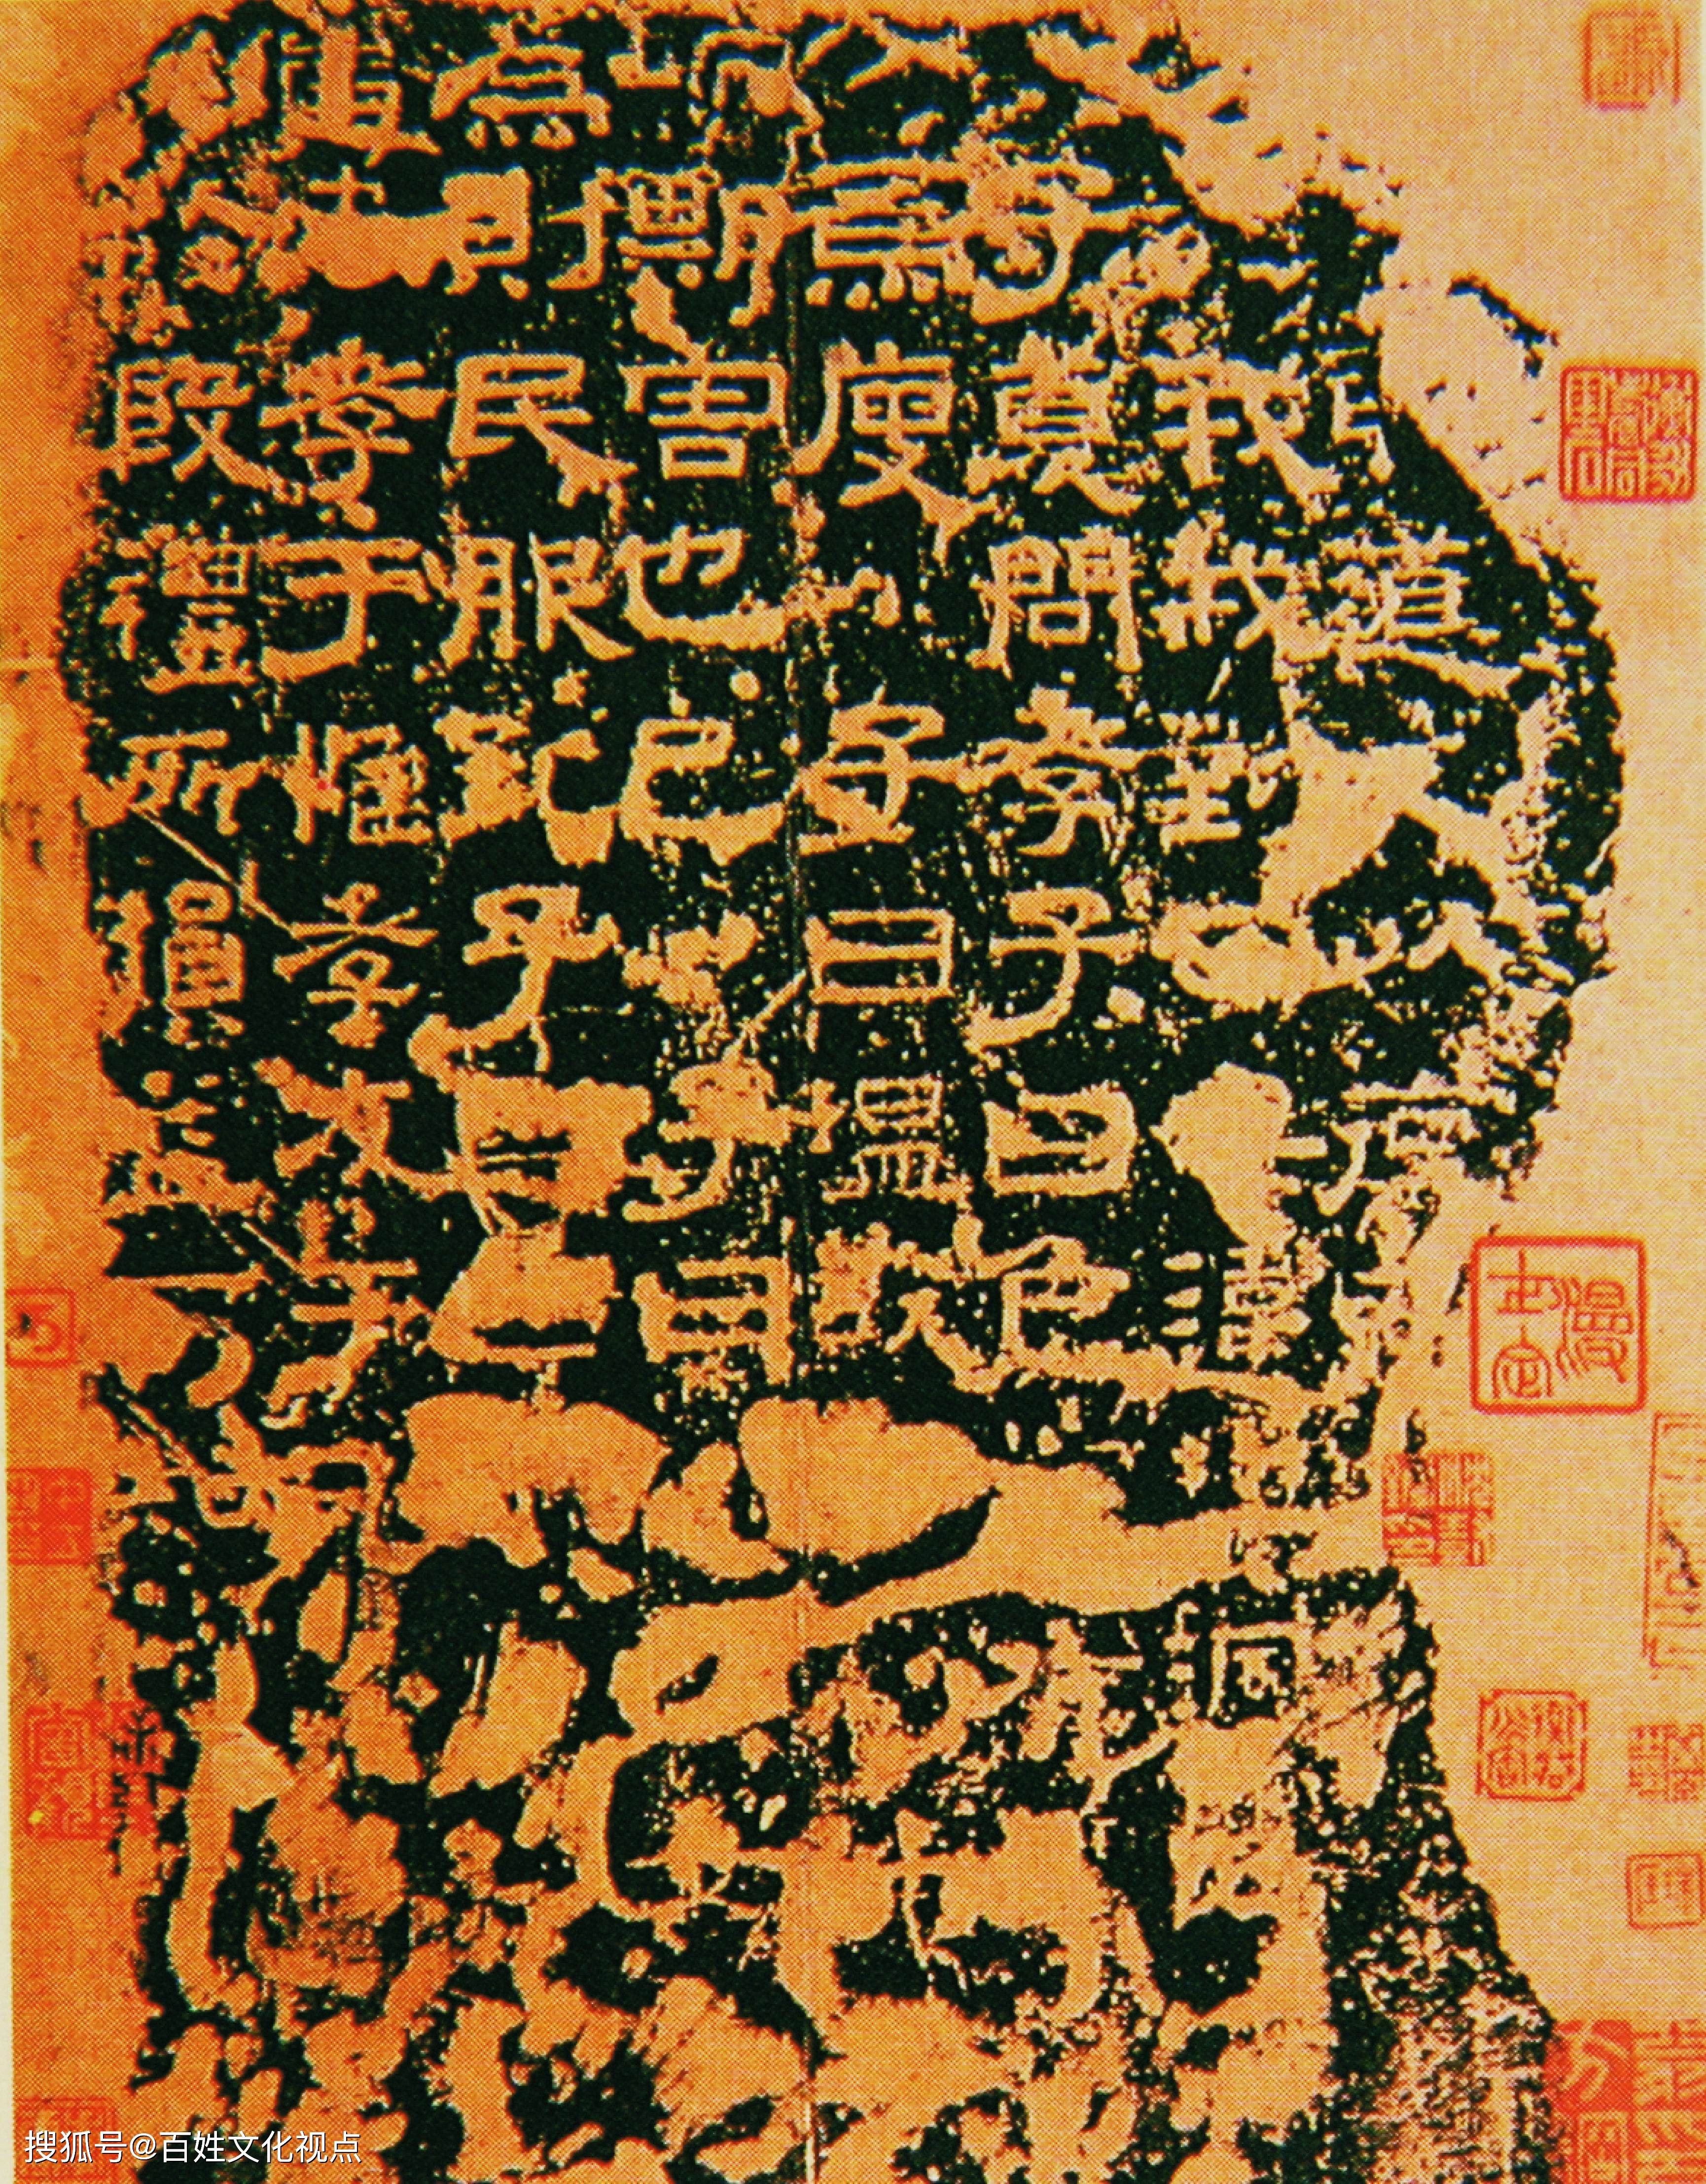 该碑所刻隶书,严谨规范,雍容端整,是汉隶发展到相当成熟时期的产物,并